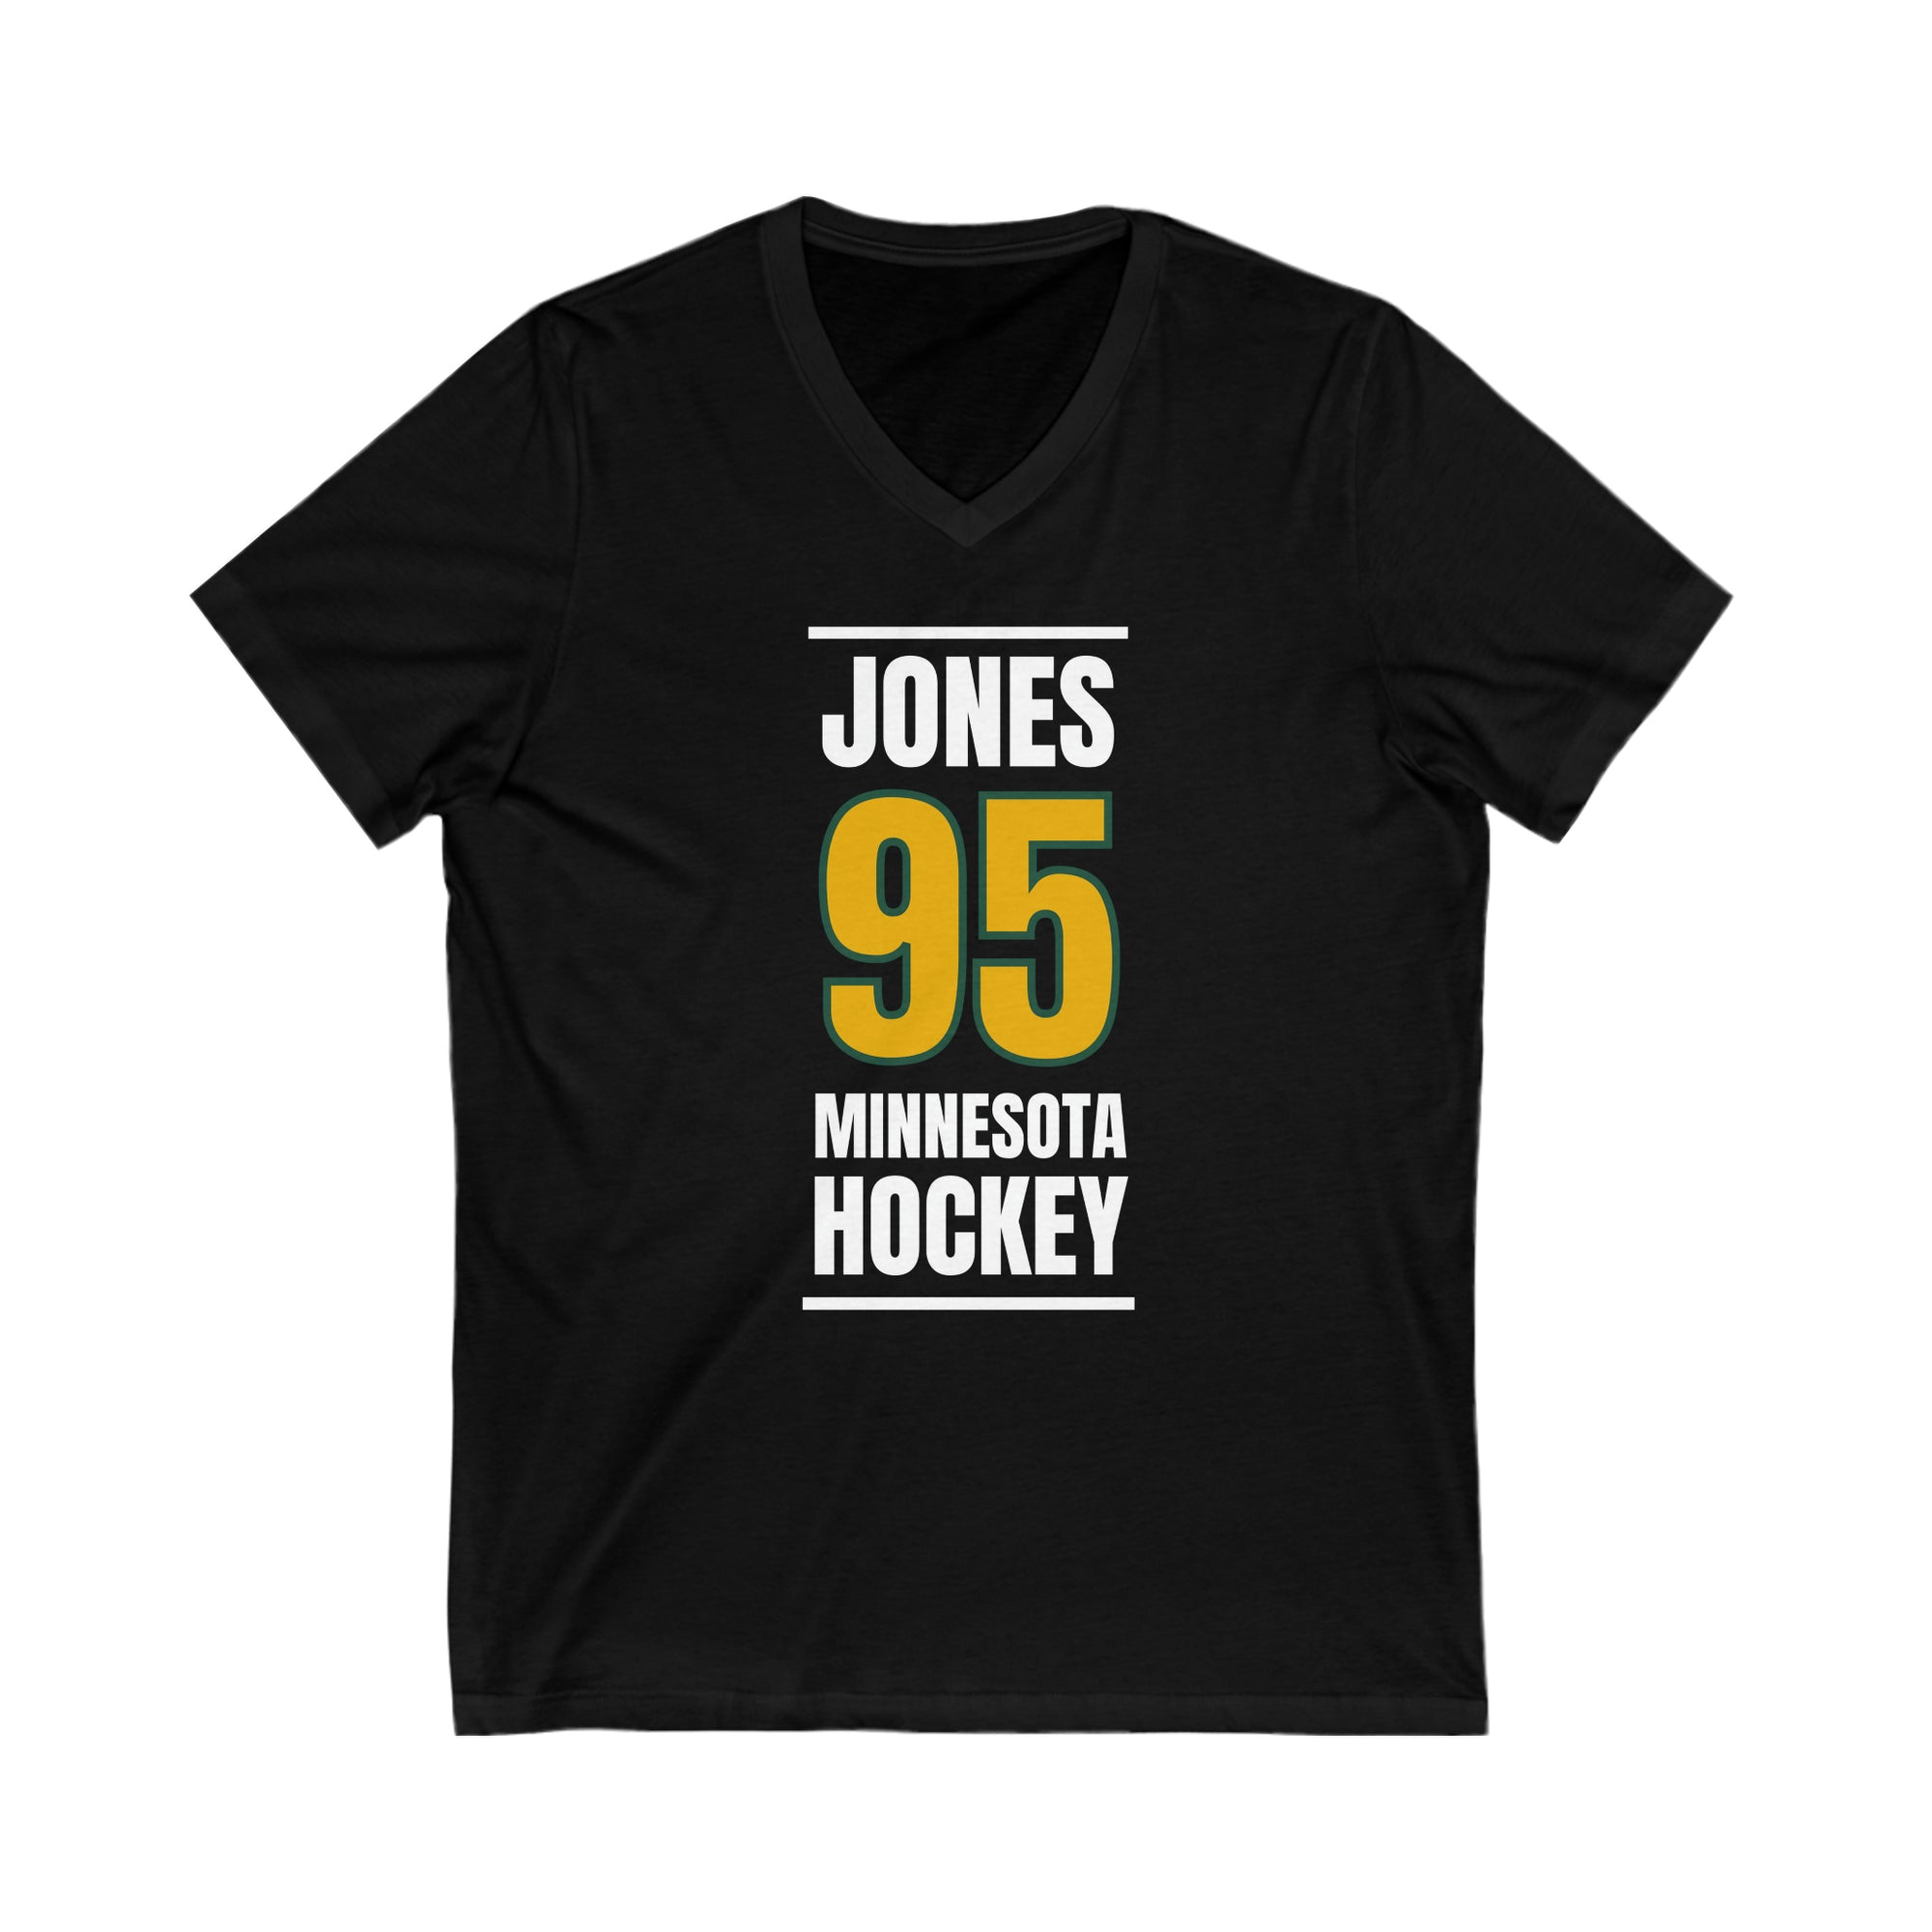 Jones 95 Minnesota Hockey Gold Vertical Design Unisex V-Neck Tee